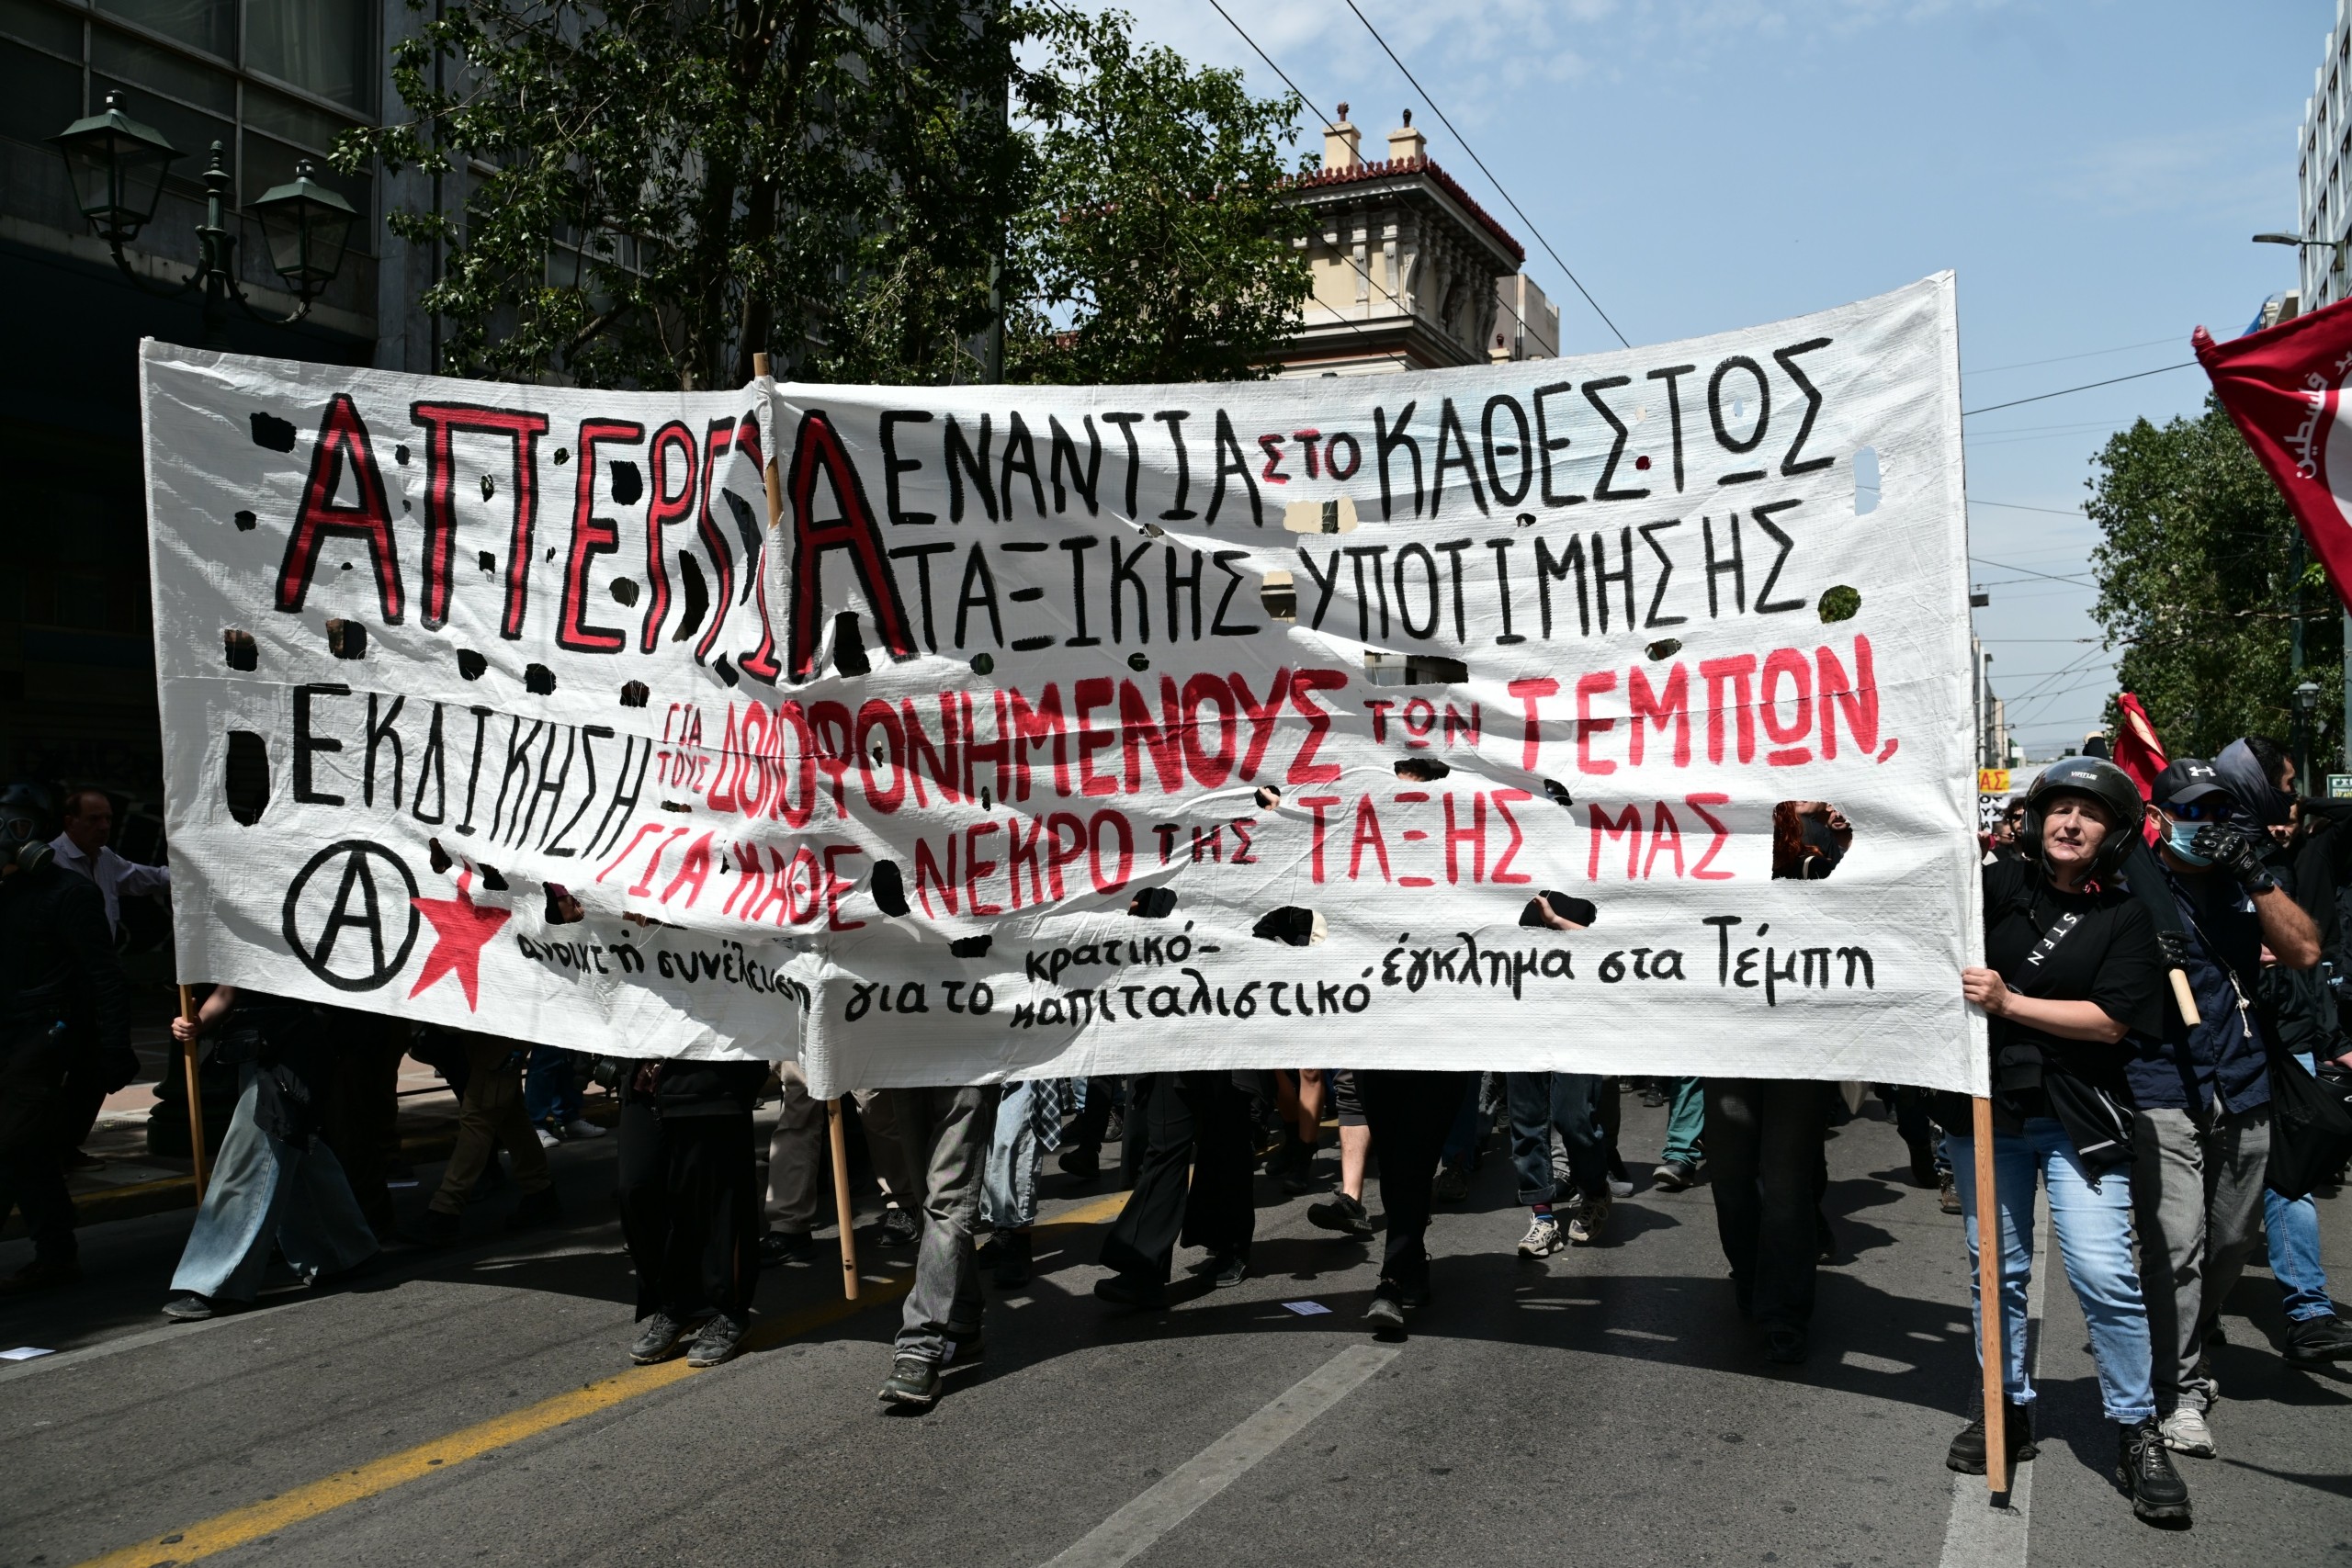 Απεργία 17 Απριλίου: Χιλιάδες κόσμου διαδήλωσαν στο κέντρο της Αθήνας – Άνοιξαν οι δρόμοι (pics)